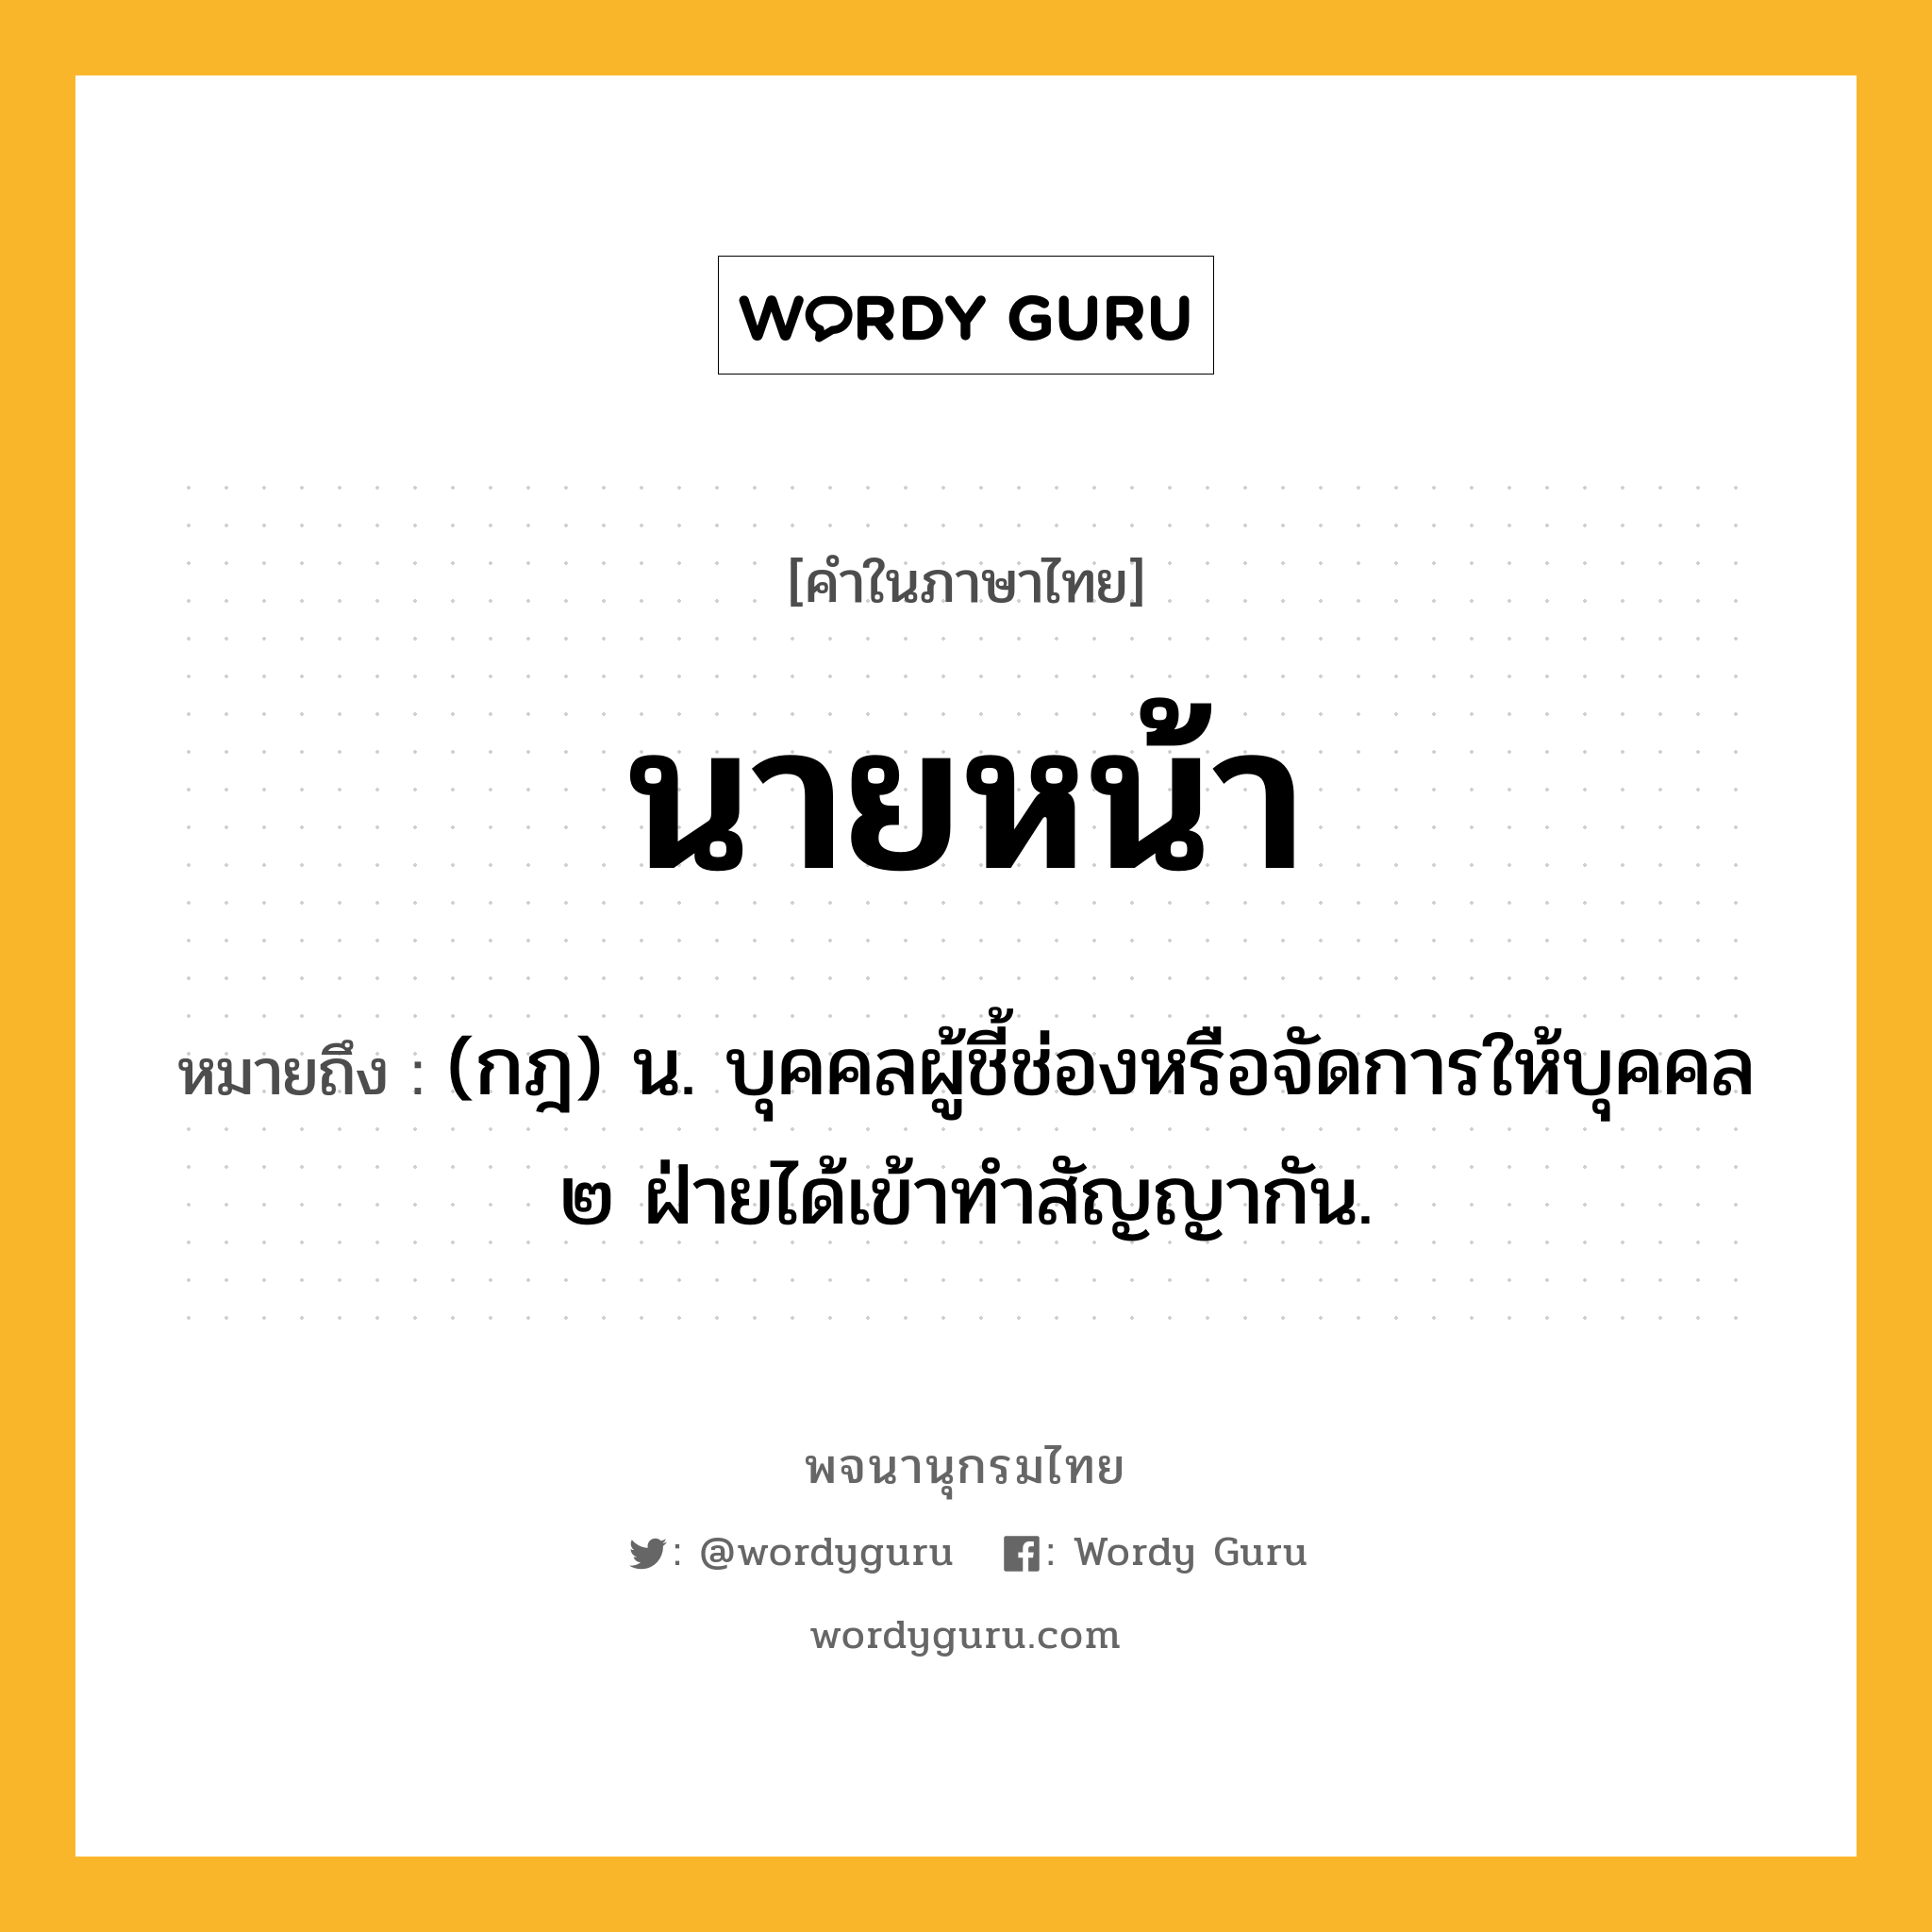 นายหน้า ความหมาย หมายถึงอะไร?, คำในภาษาไทย นายหน้า หมายถึง (กฎ) น. บุคคลผู้ชี้ช่องหรือจัดการให้บุคคล ๒ ฝ่ายได้เข้าทําสัญญากัน.